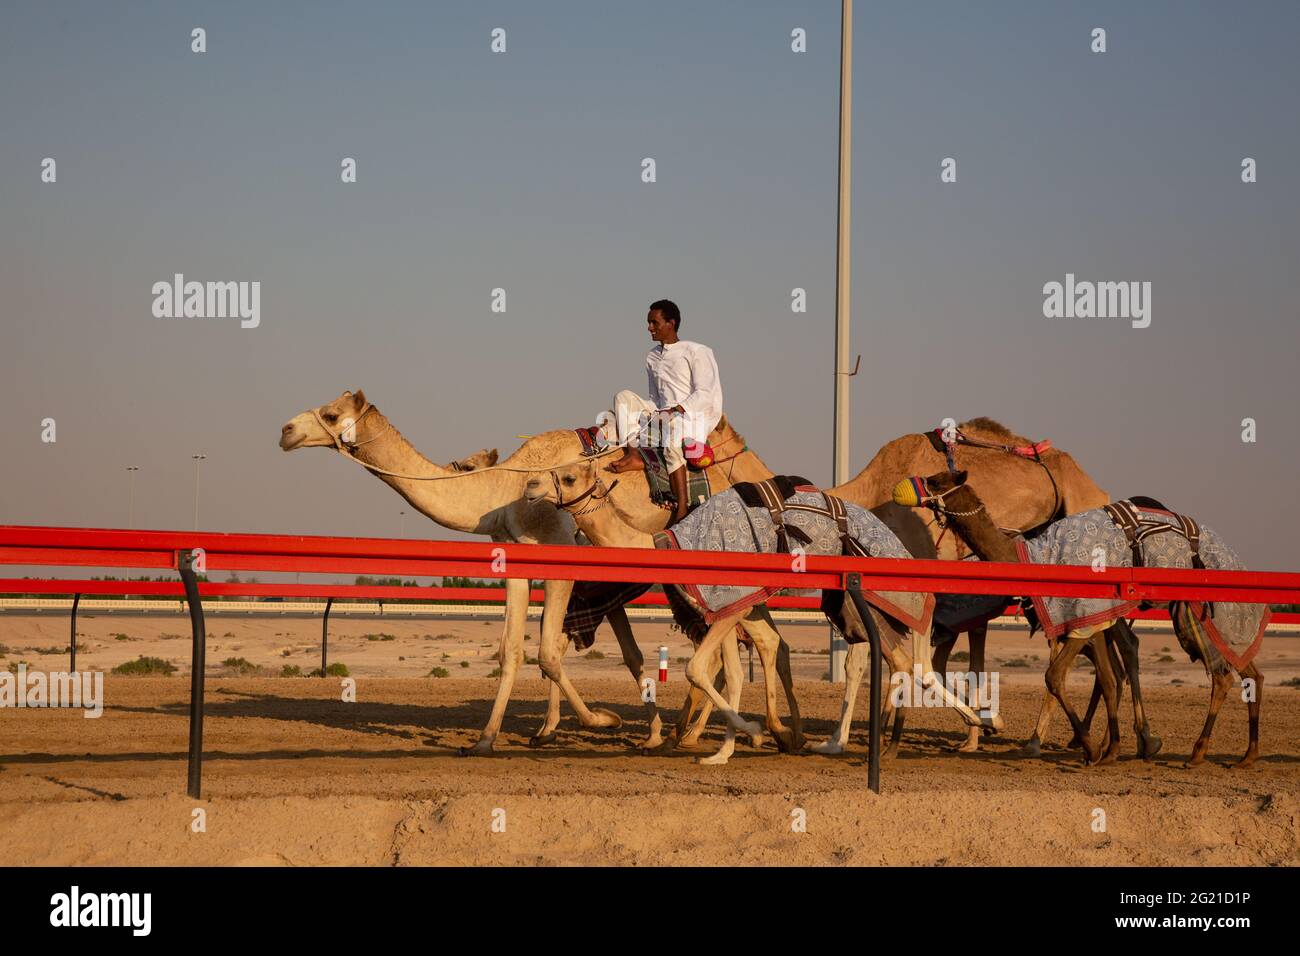 Un jockey forme de jeunes chameaux sur le circuit DE COURSE AL Marmoom Camel, Dubaï, Émirats arabes Unis Banque D'Images